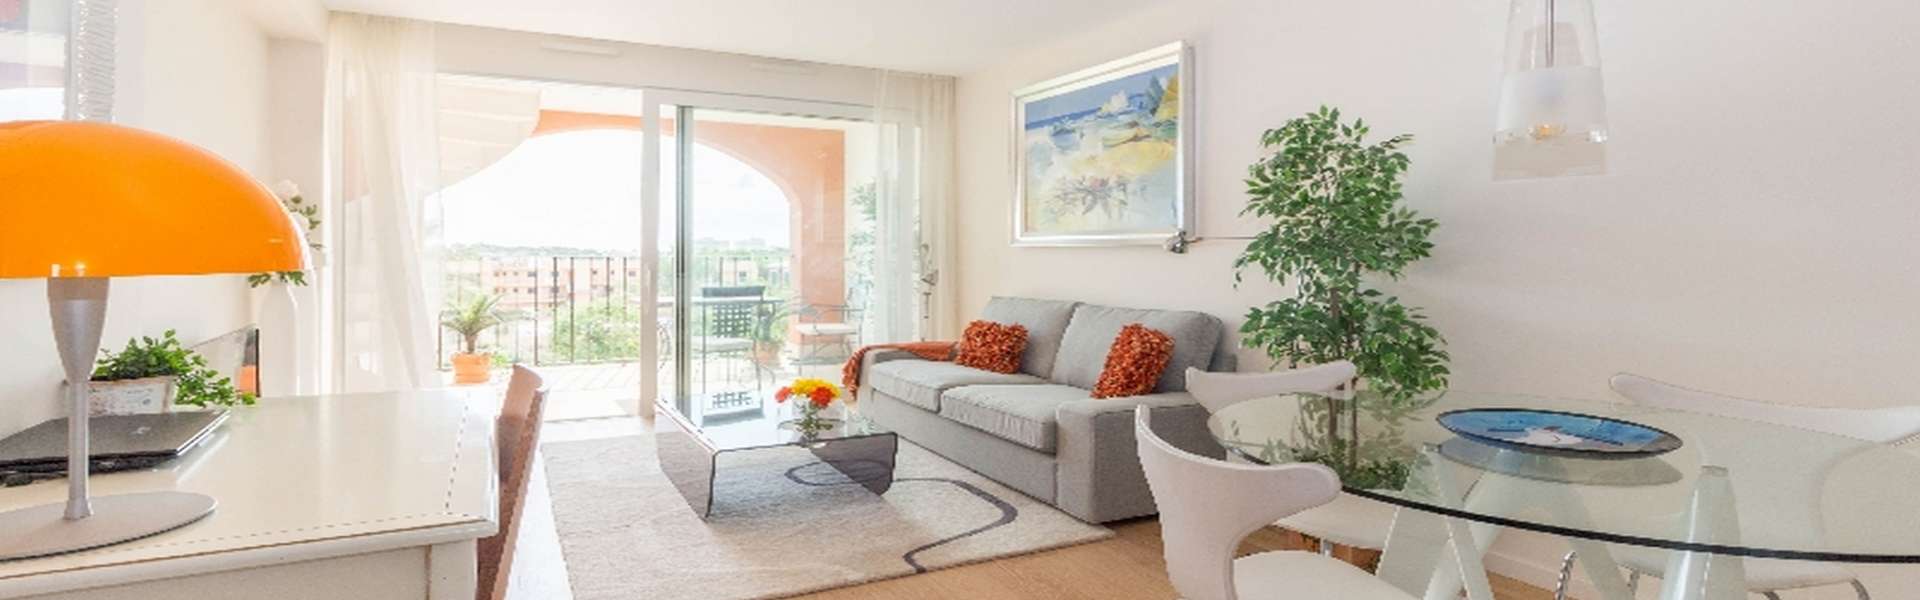 Schöne Wohnung mit Meerblick in Portocolom in einer gepflegten Anlage 